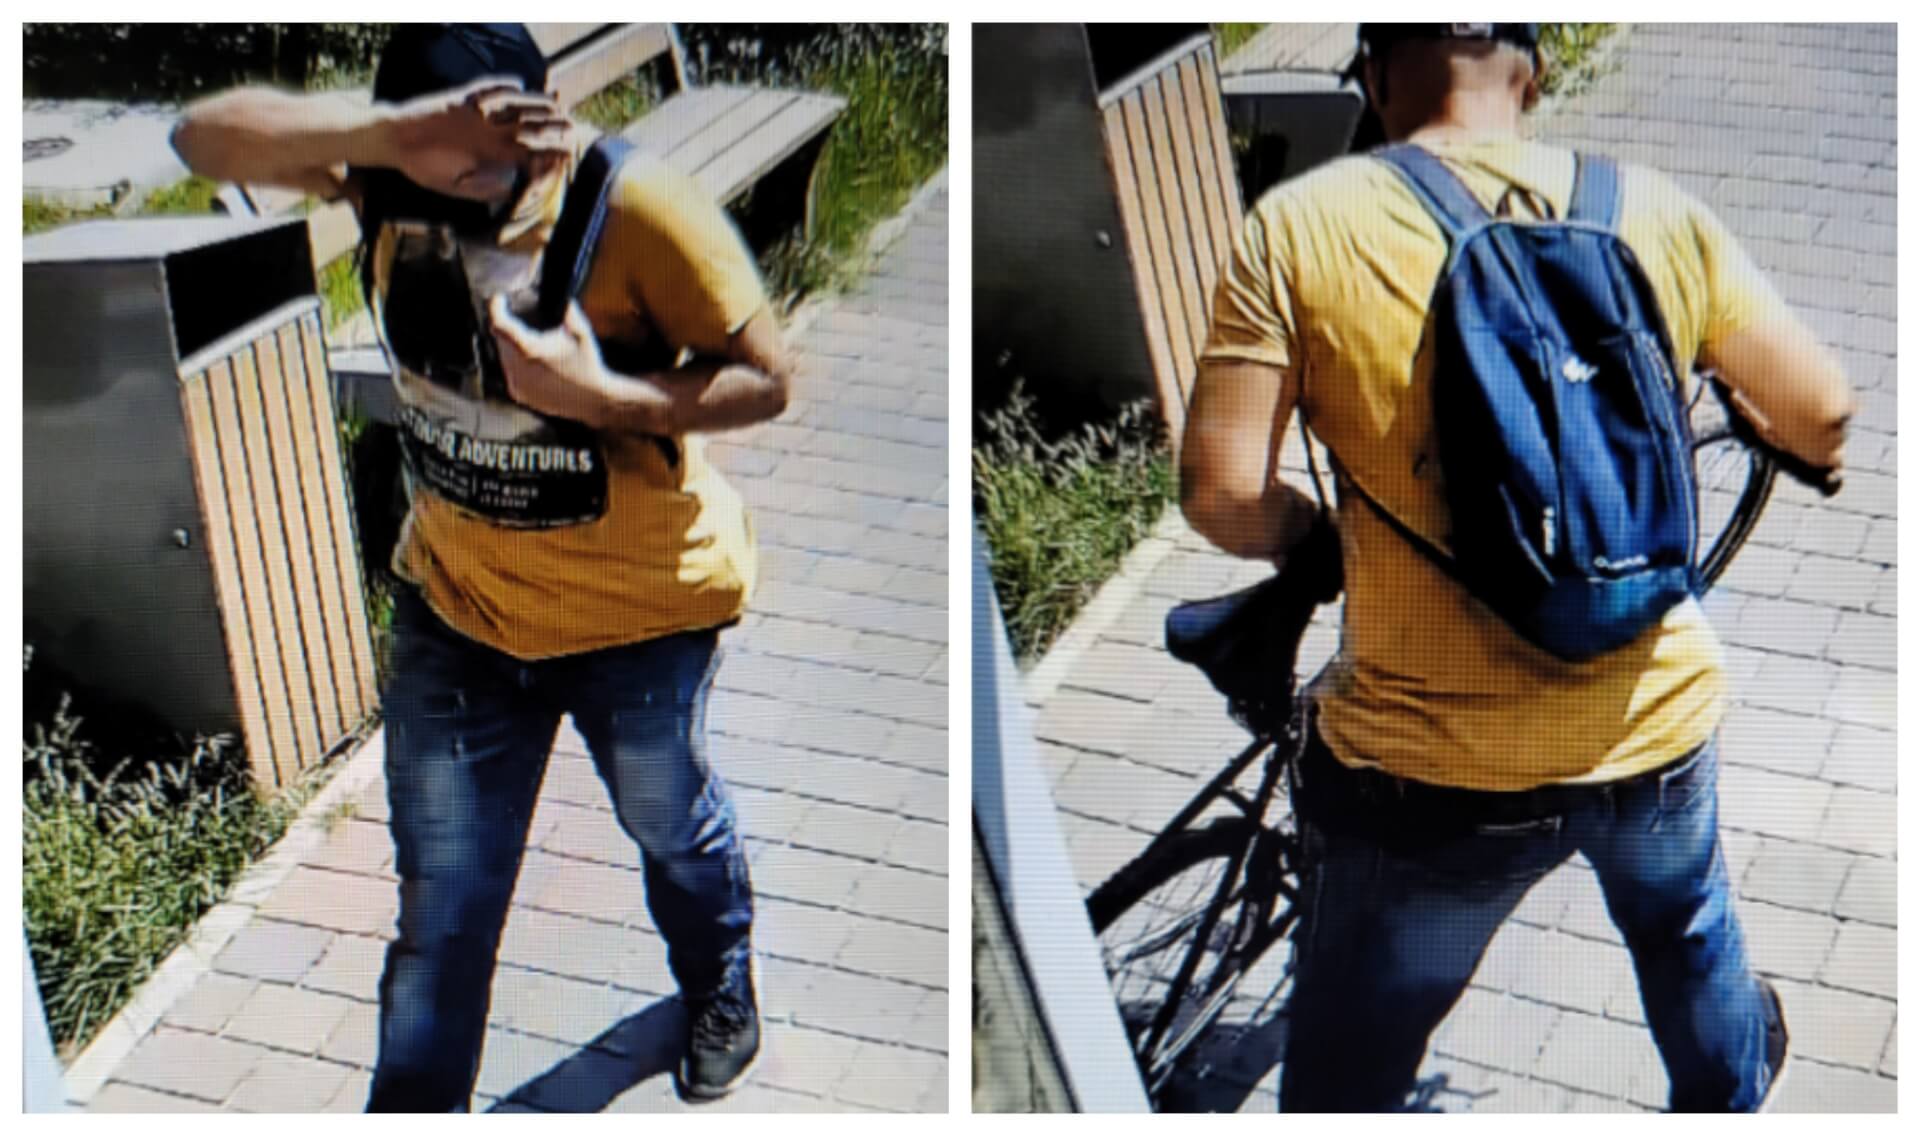 Podejrzany o kradzież roweru, Katowice